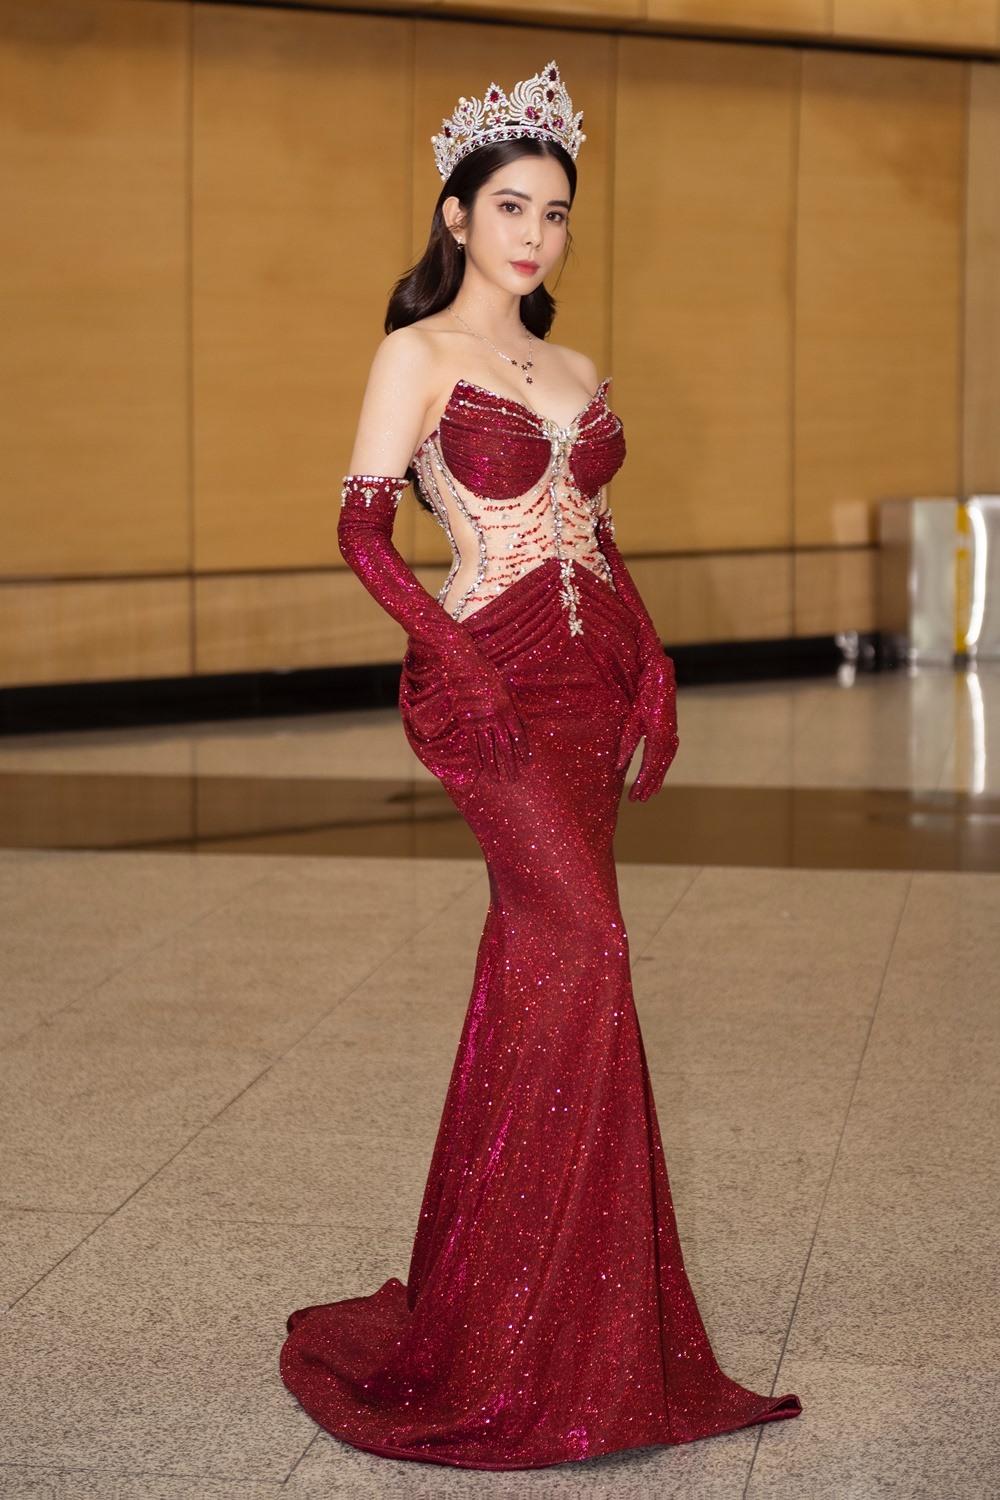 Huỳnh Vy cho biết cô nhận lời mời từ bà chủ tịch cuộc thi Miss Tourism Queen Worldwide và đã ngay lập tức nhận lời, sắp xếp công việc để bay qua Kuala Lumpur tham gia sự kiện. Cũng chính tại cuộc thi này, năm 2018, Huỳnh Vy đã bất ngờ được xướng tên ở vị trí cao nhất.